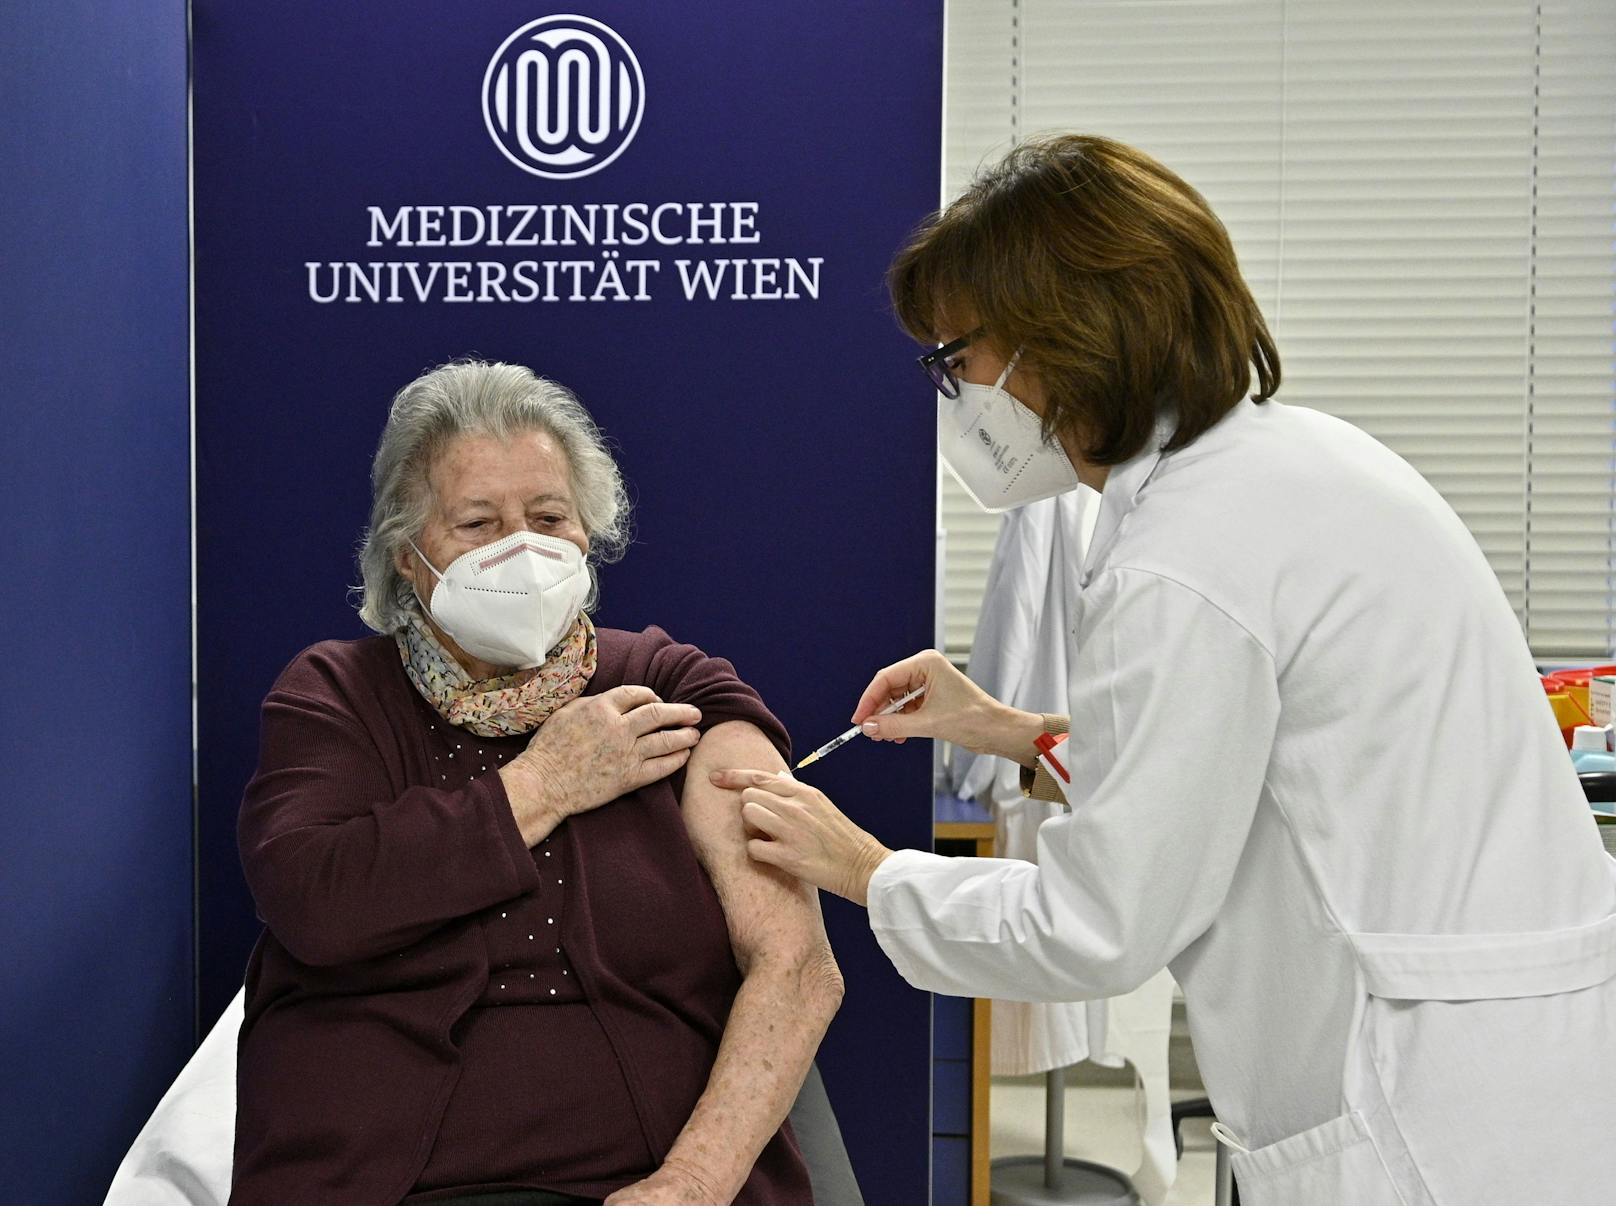 Ende Dezember starteten die Impfungen in Österreich. Seither verläuft die Immunisierung schleppend. In OÖ gibt es so wenig Impfstoff, dass laut derzeitigen Plänen Ende März nicht einmal 5 Prozent geimpft sind.